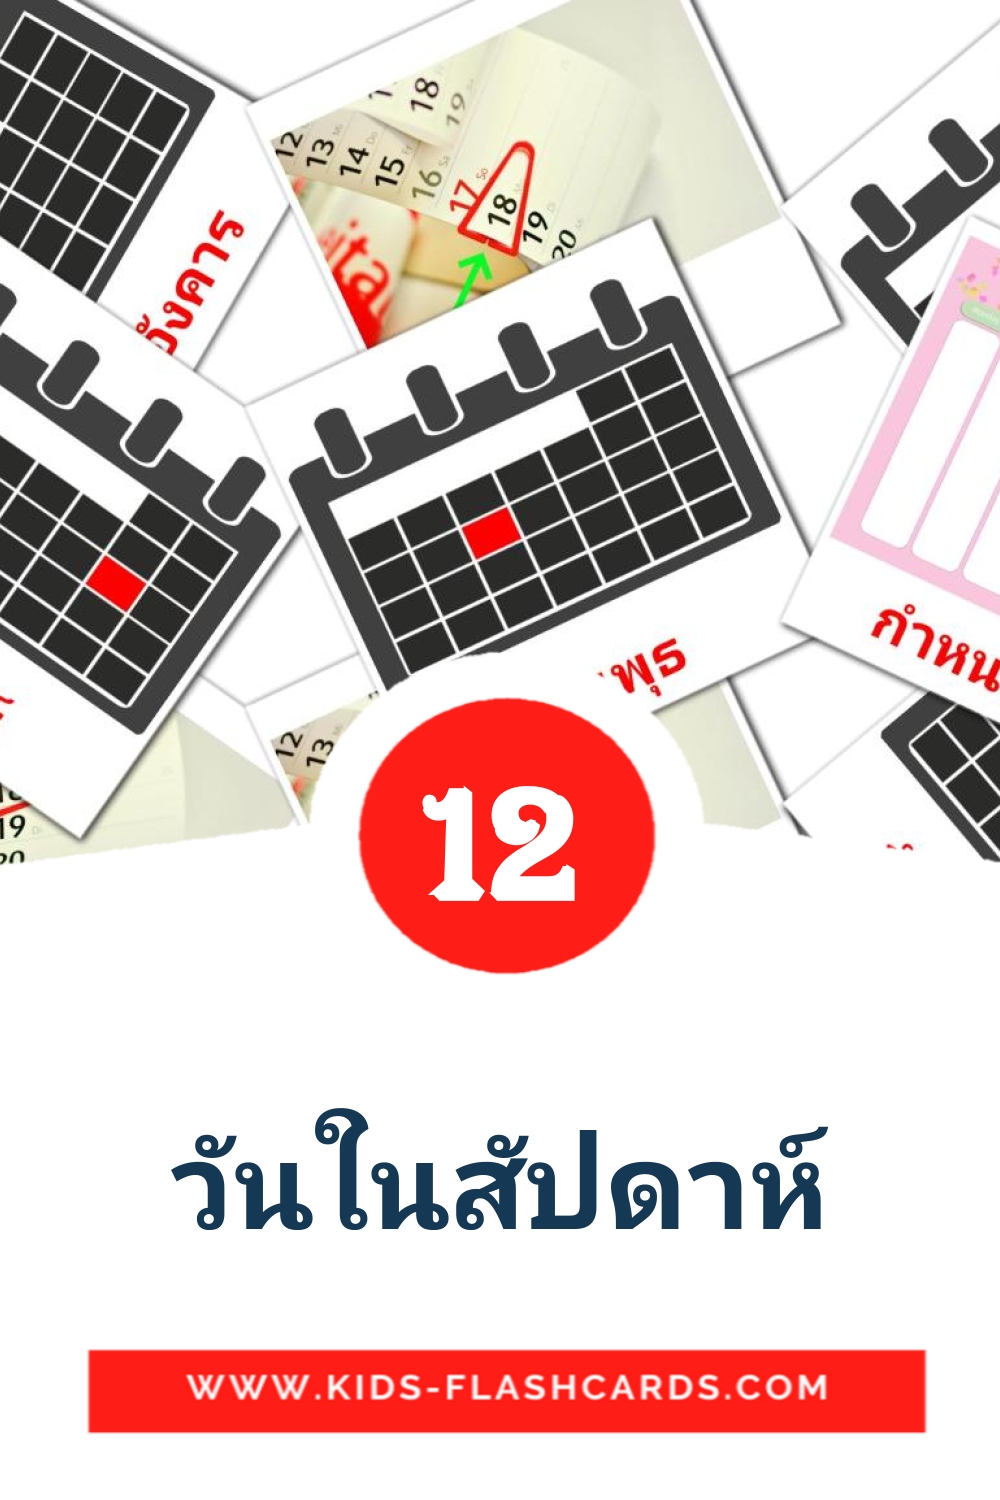 12 tarjetas didacticas de วันในสัปดาห์ para el jardín de infancia en tailandés